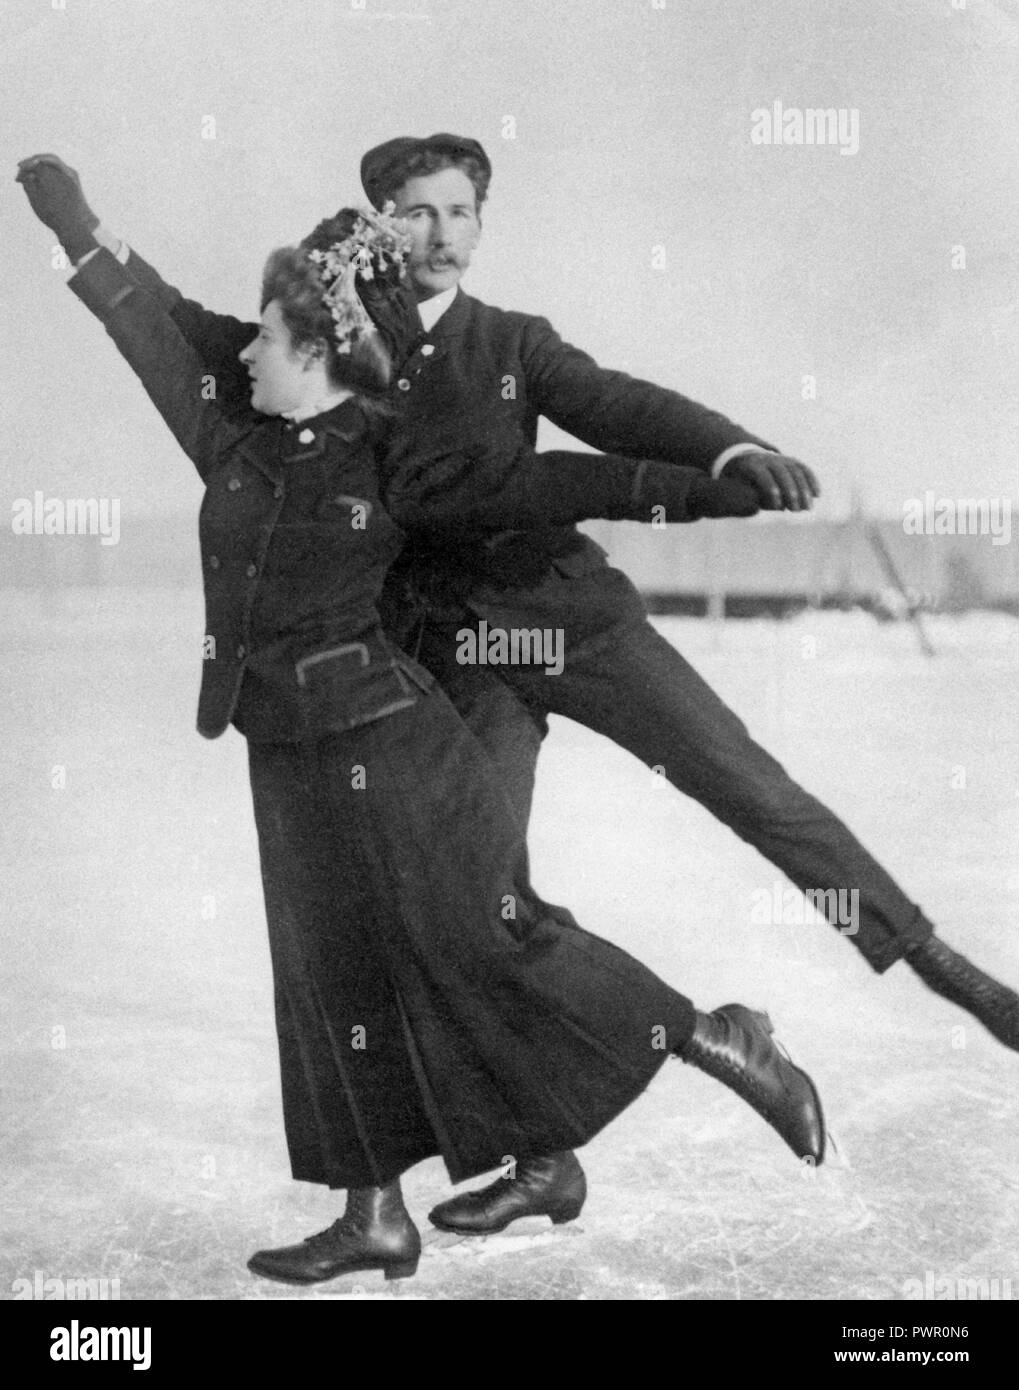 Figure skating au tournant du siècle, 1800-1900. Un couple est photographié ensemble lorsque vous l'extérieur. Banque D'Images